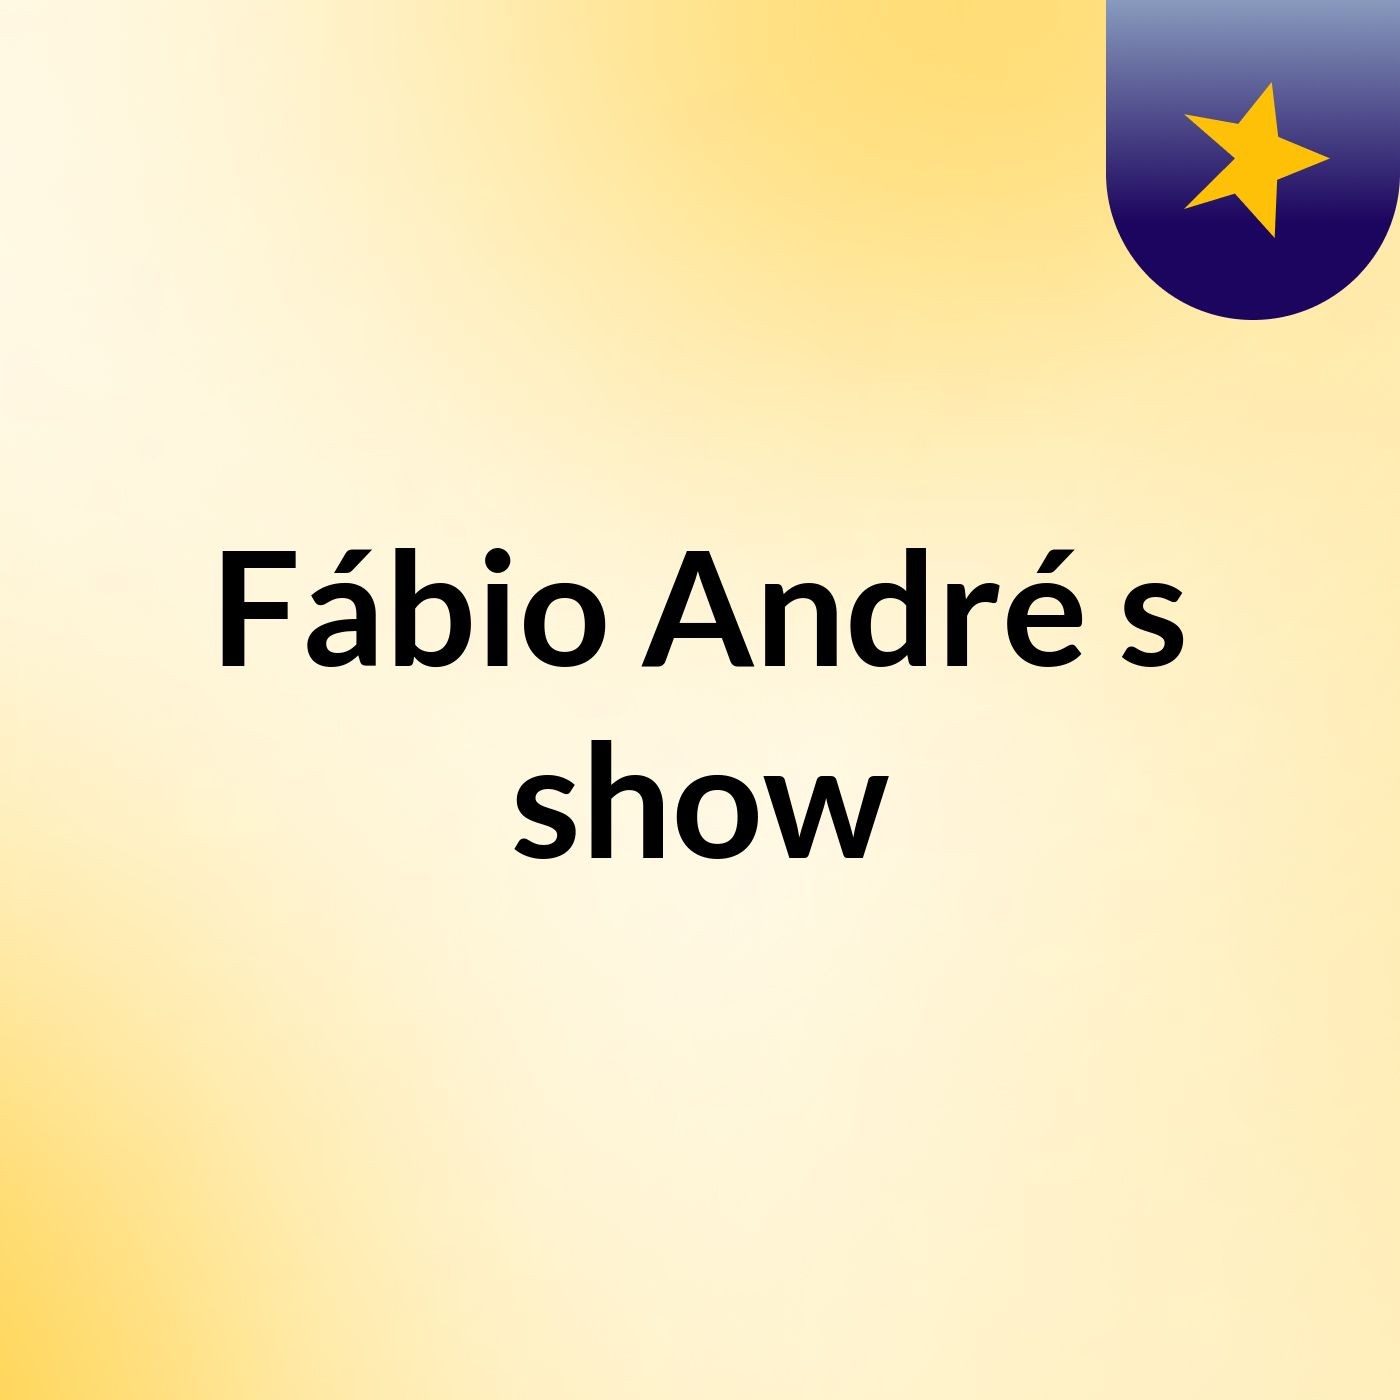 Fábio André's show